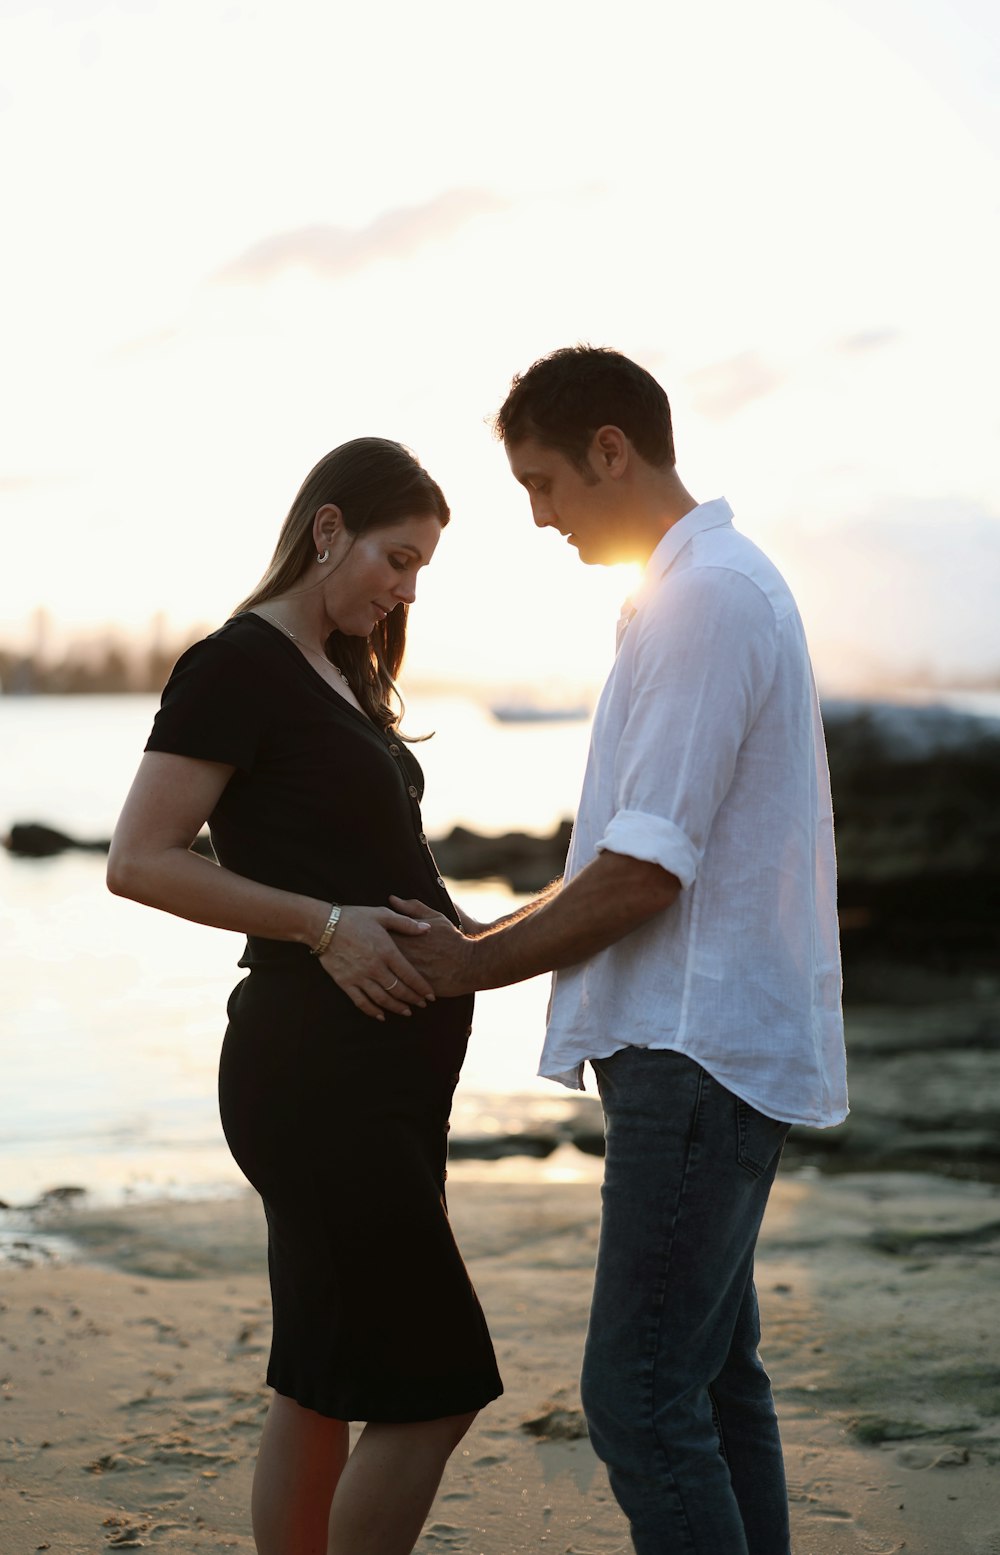 Eine schwangere Frau steht neben einem Mann am Strand